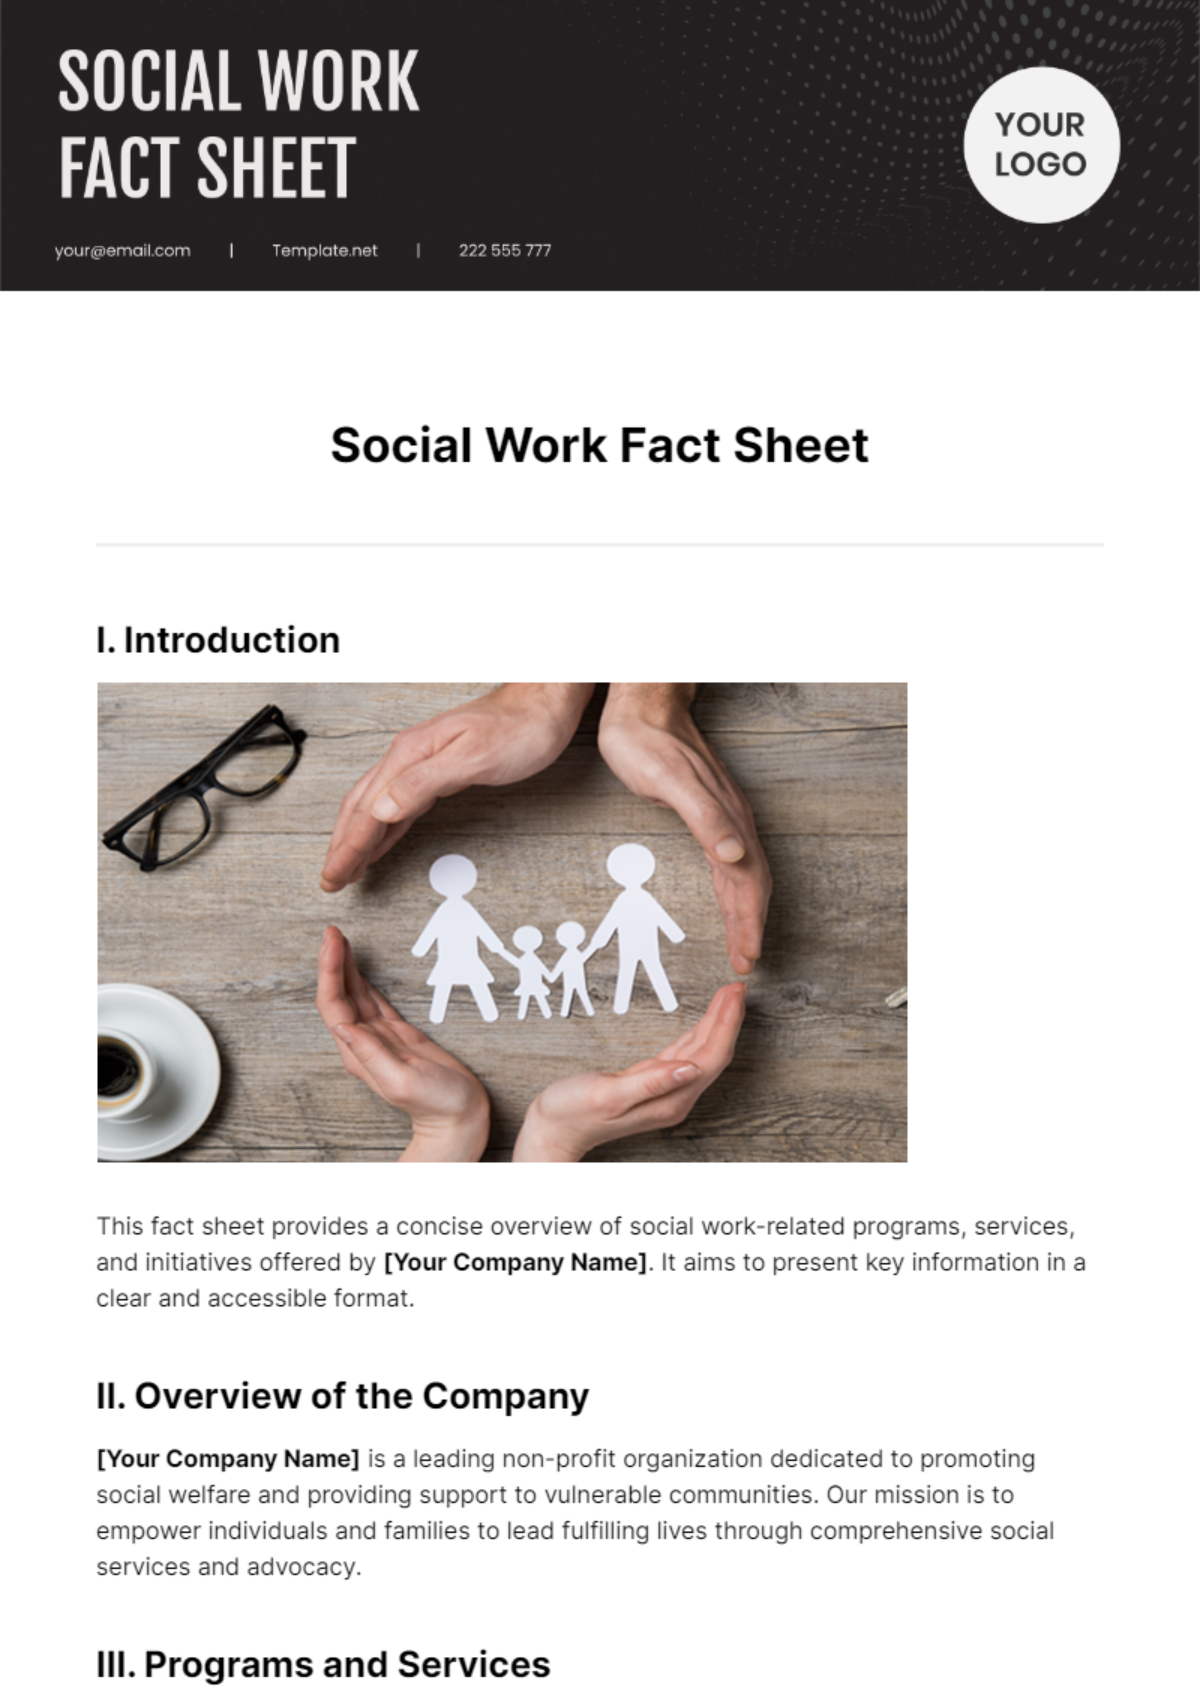 Social Work Fact Sheet Template